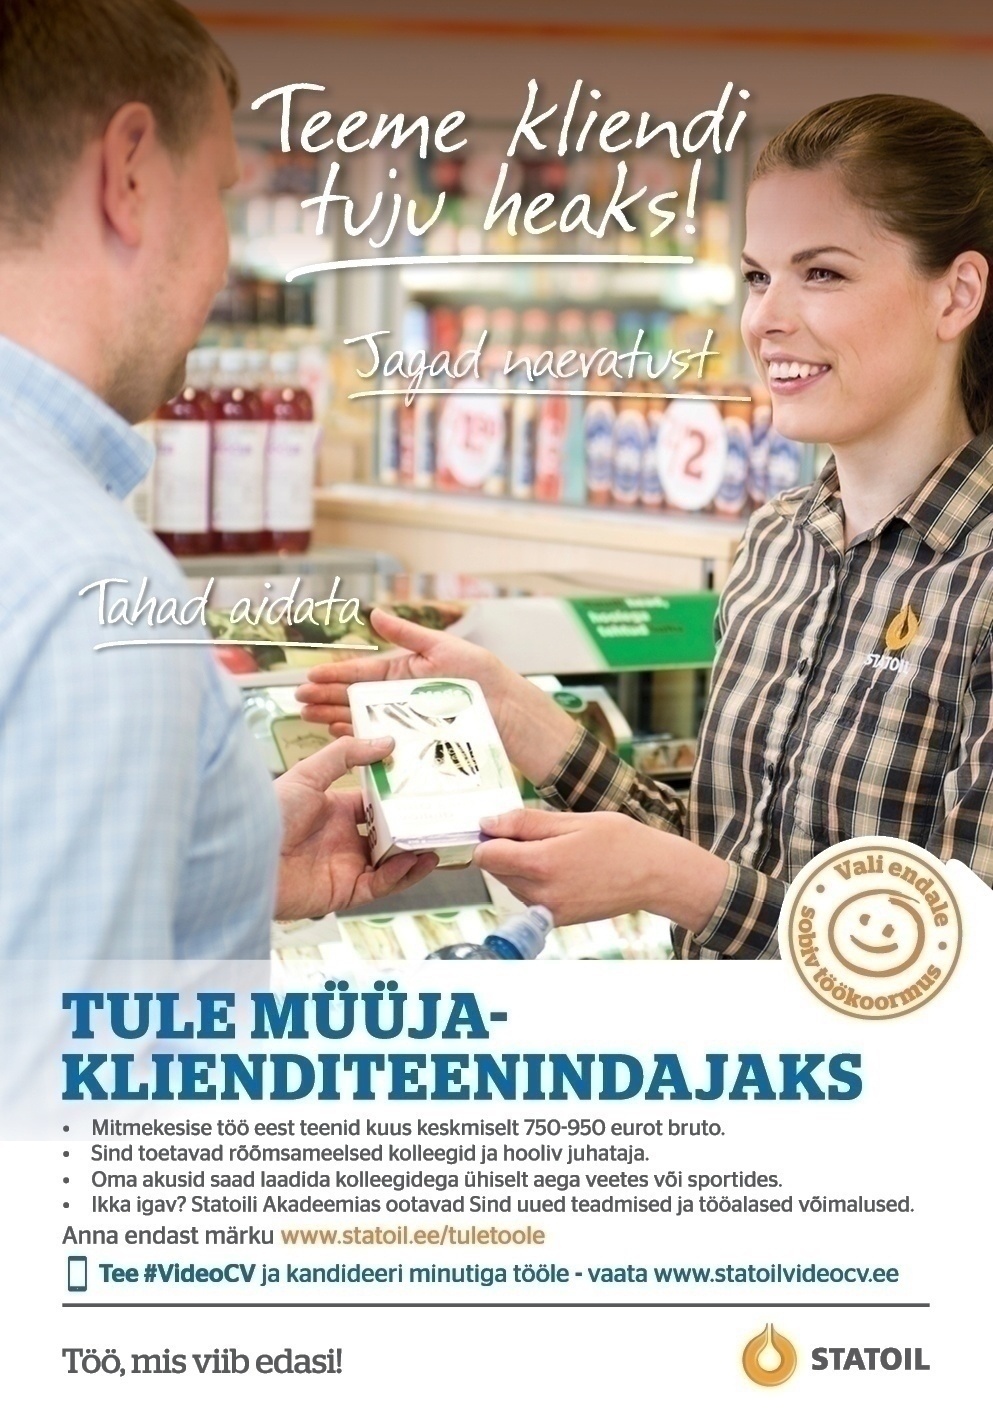 Circle K Eesti AS Müüja-klienditeenindaja Tallinna (Sikupilli ja Katusepapi) teenindusjaamades